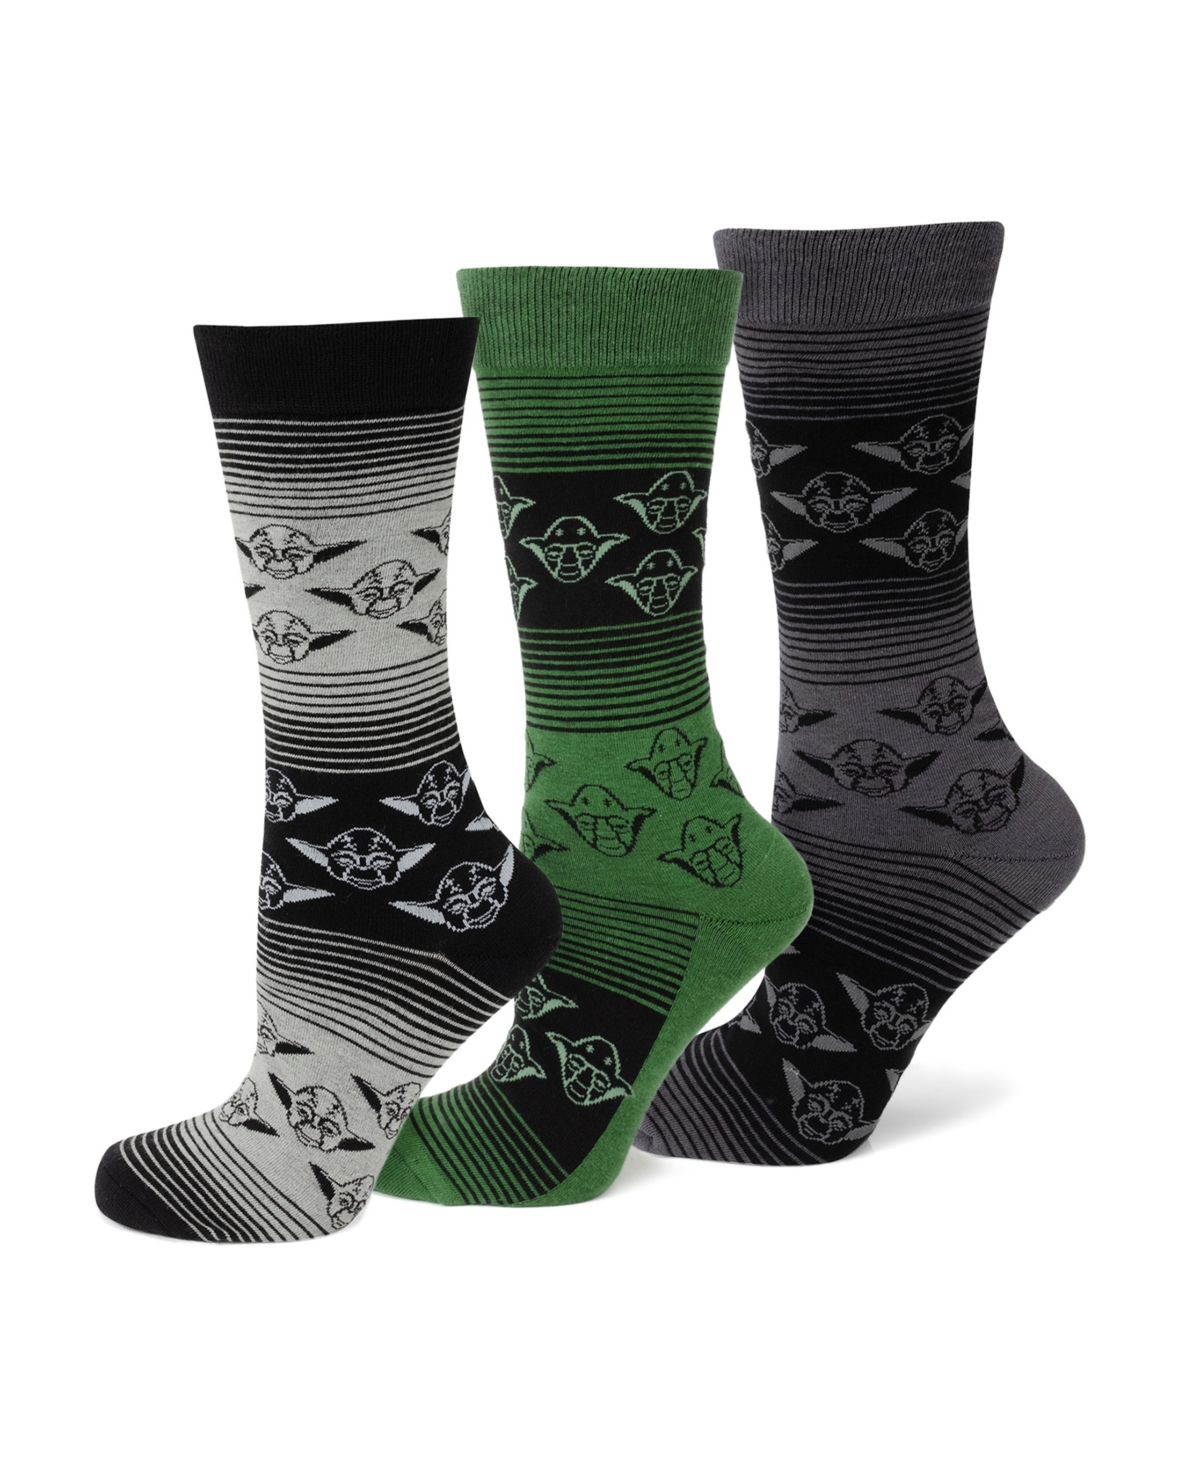 Men's Yoda Sock Gift Set, Pack of 3 - Multi